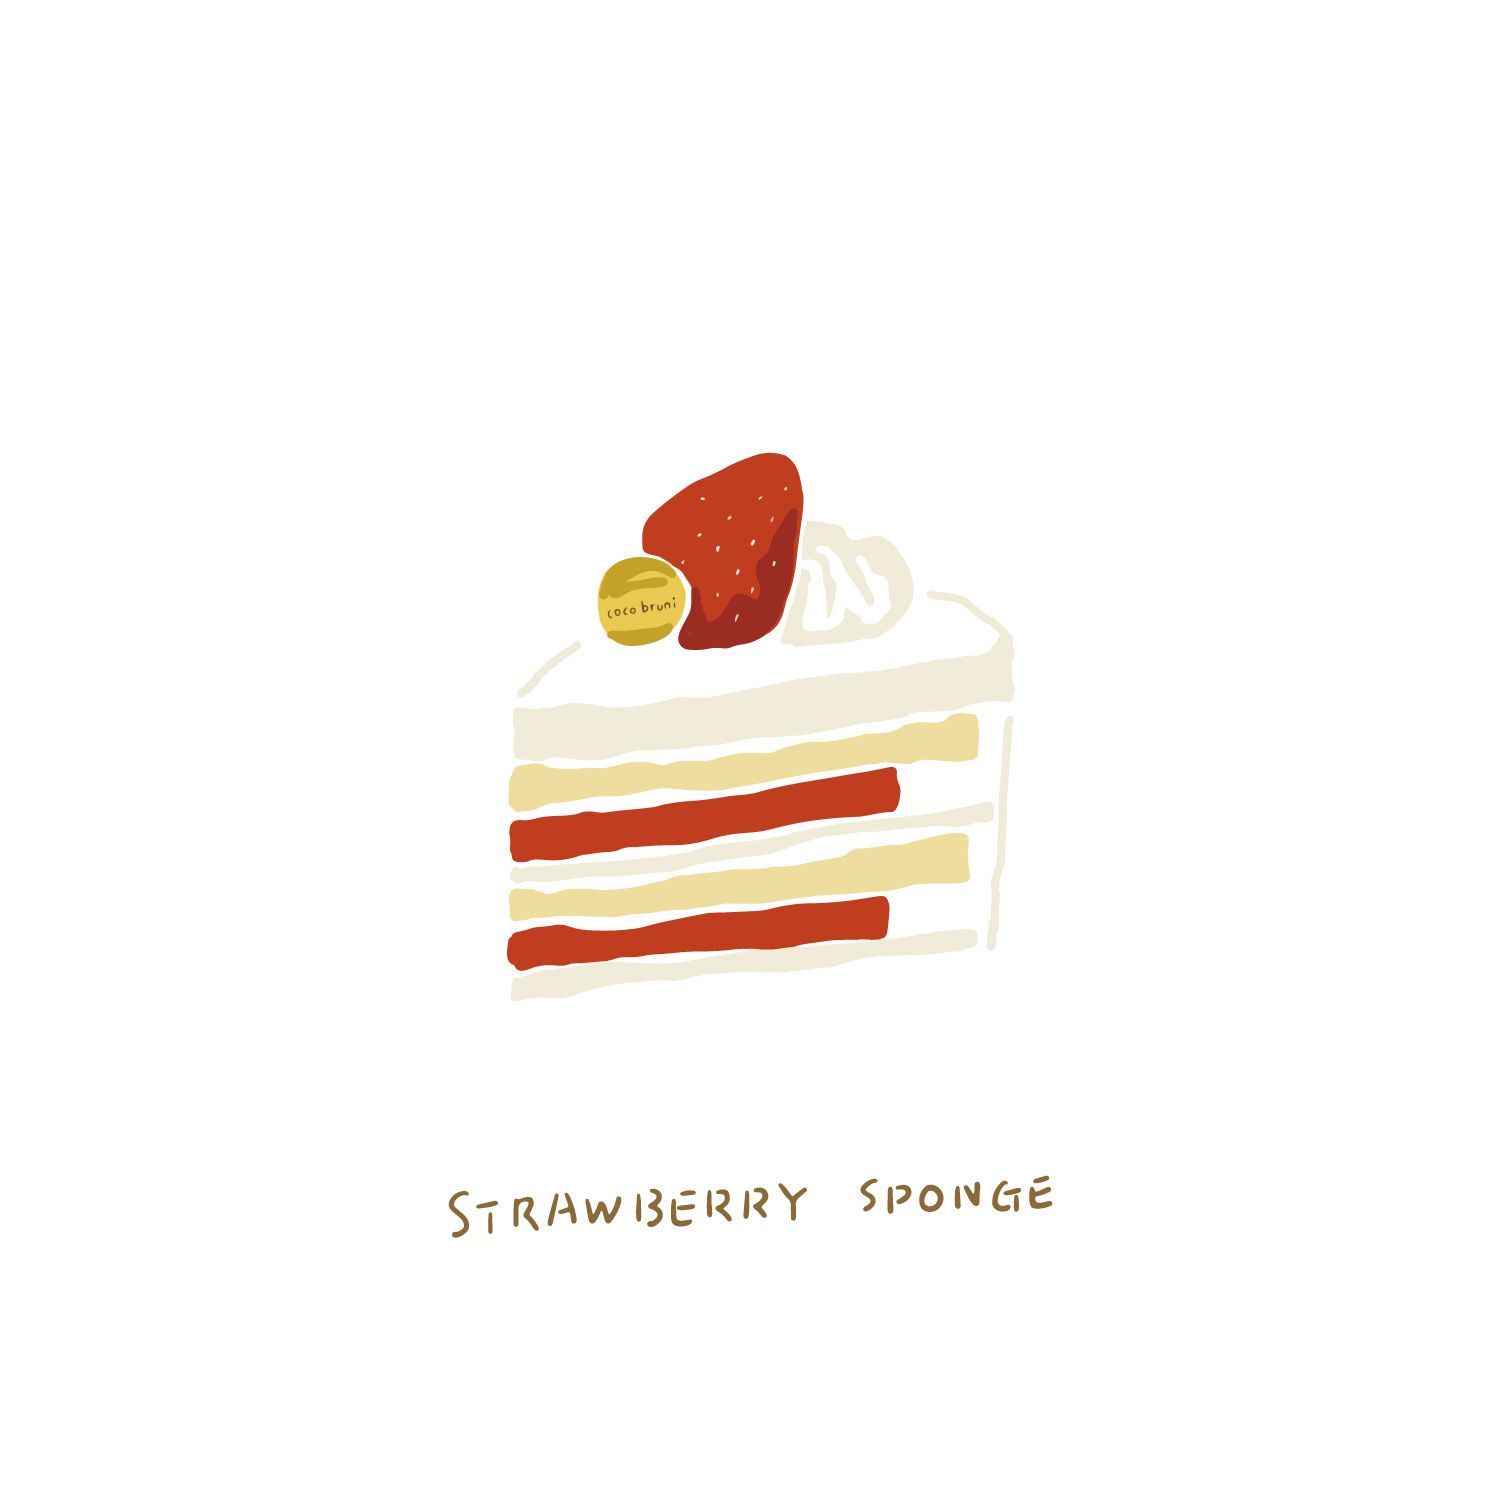 Strawberry cake -   6 strawberry cake Illustration ideas